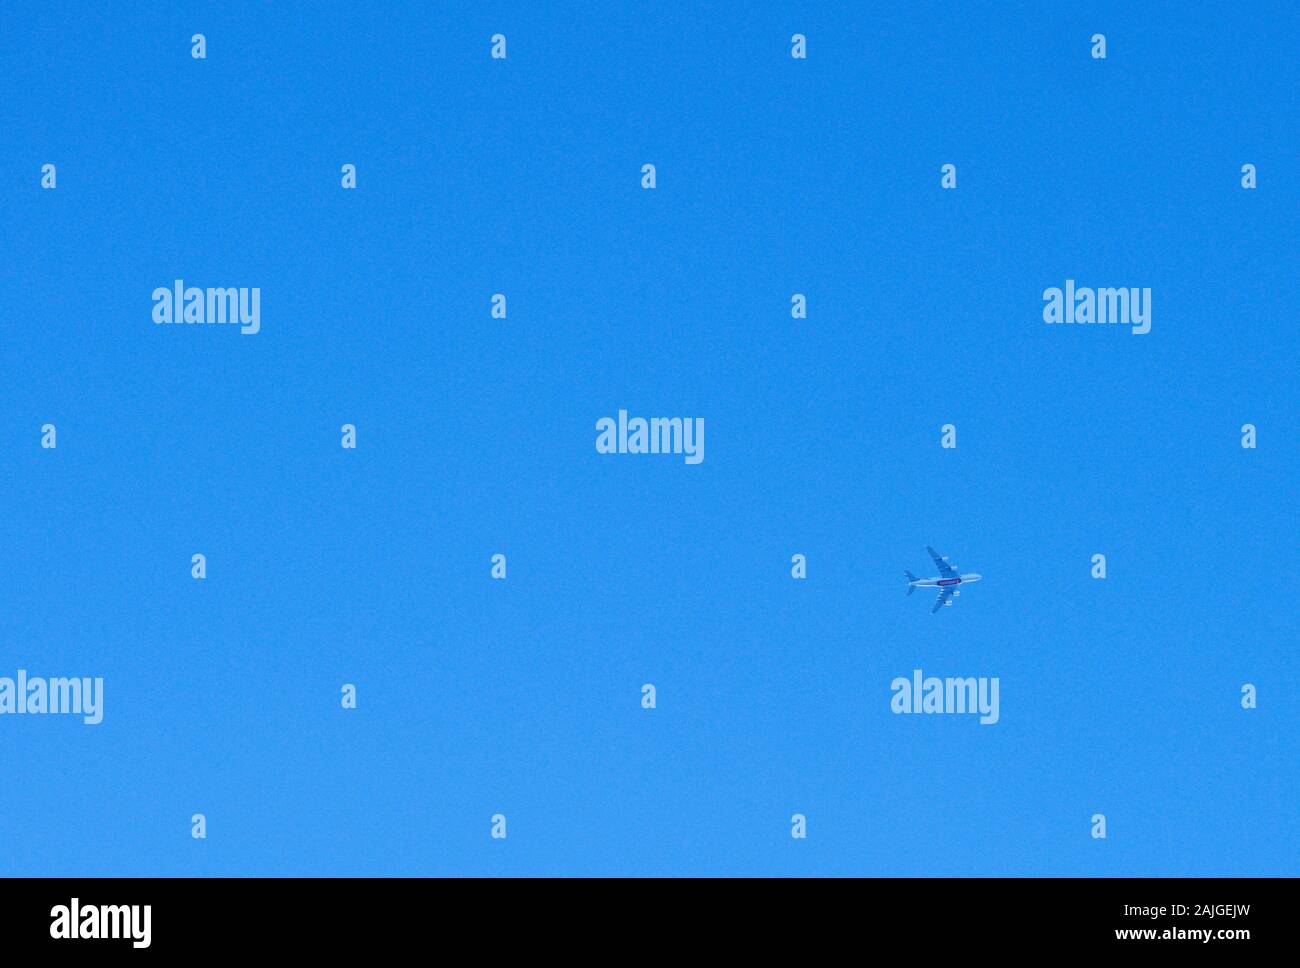 Unis A 380 à Marktoberdorf, Bavière, Allemagne, le 01 janvier 2020. Un passager jet Airbus A380 d'Emirates Airlines, VAE en bleu ciel sur Janvier 01, 2020, à Marktoberdorf en Bavière, Allemagne. Photographe : Peter Schatz Banque D'Images